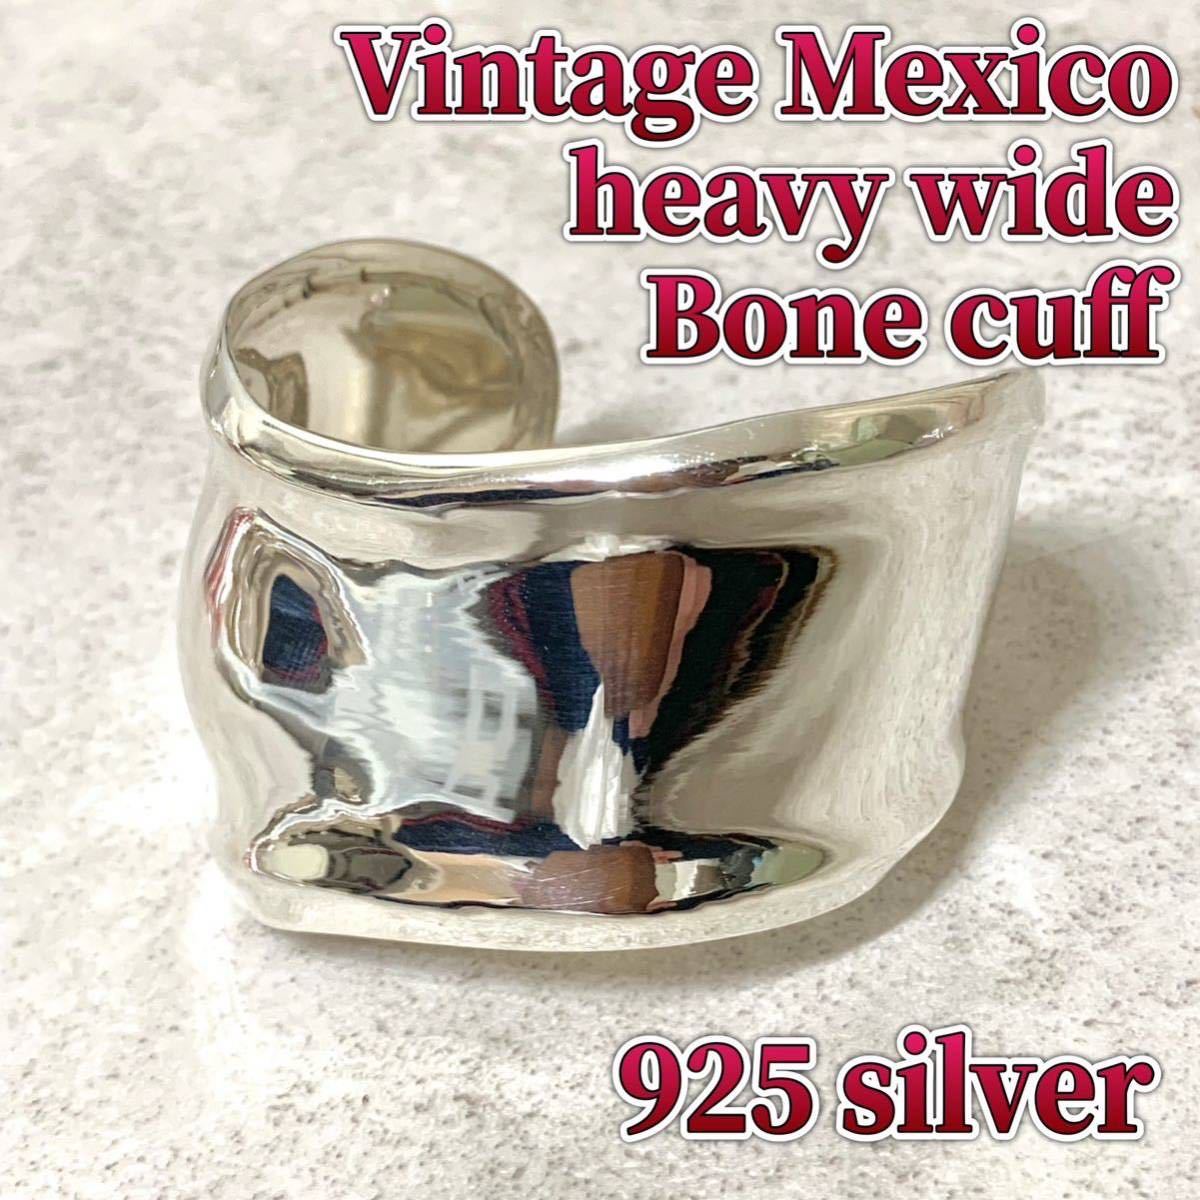 925 シルバー ボーン カフ バングル メキシコ メキシカン ビンテージ